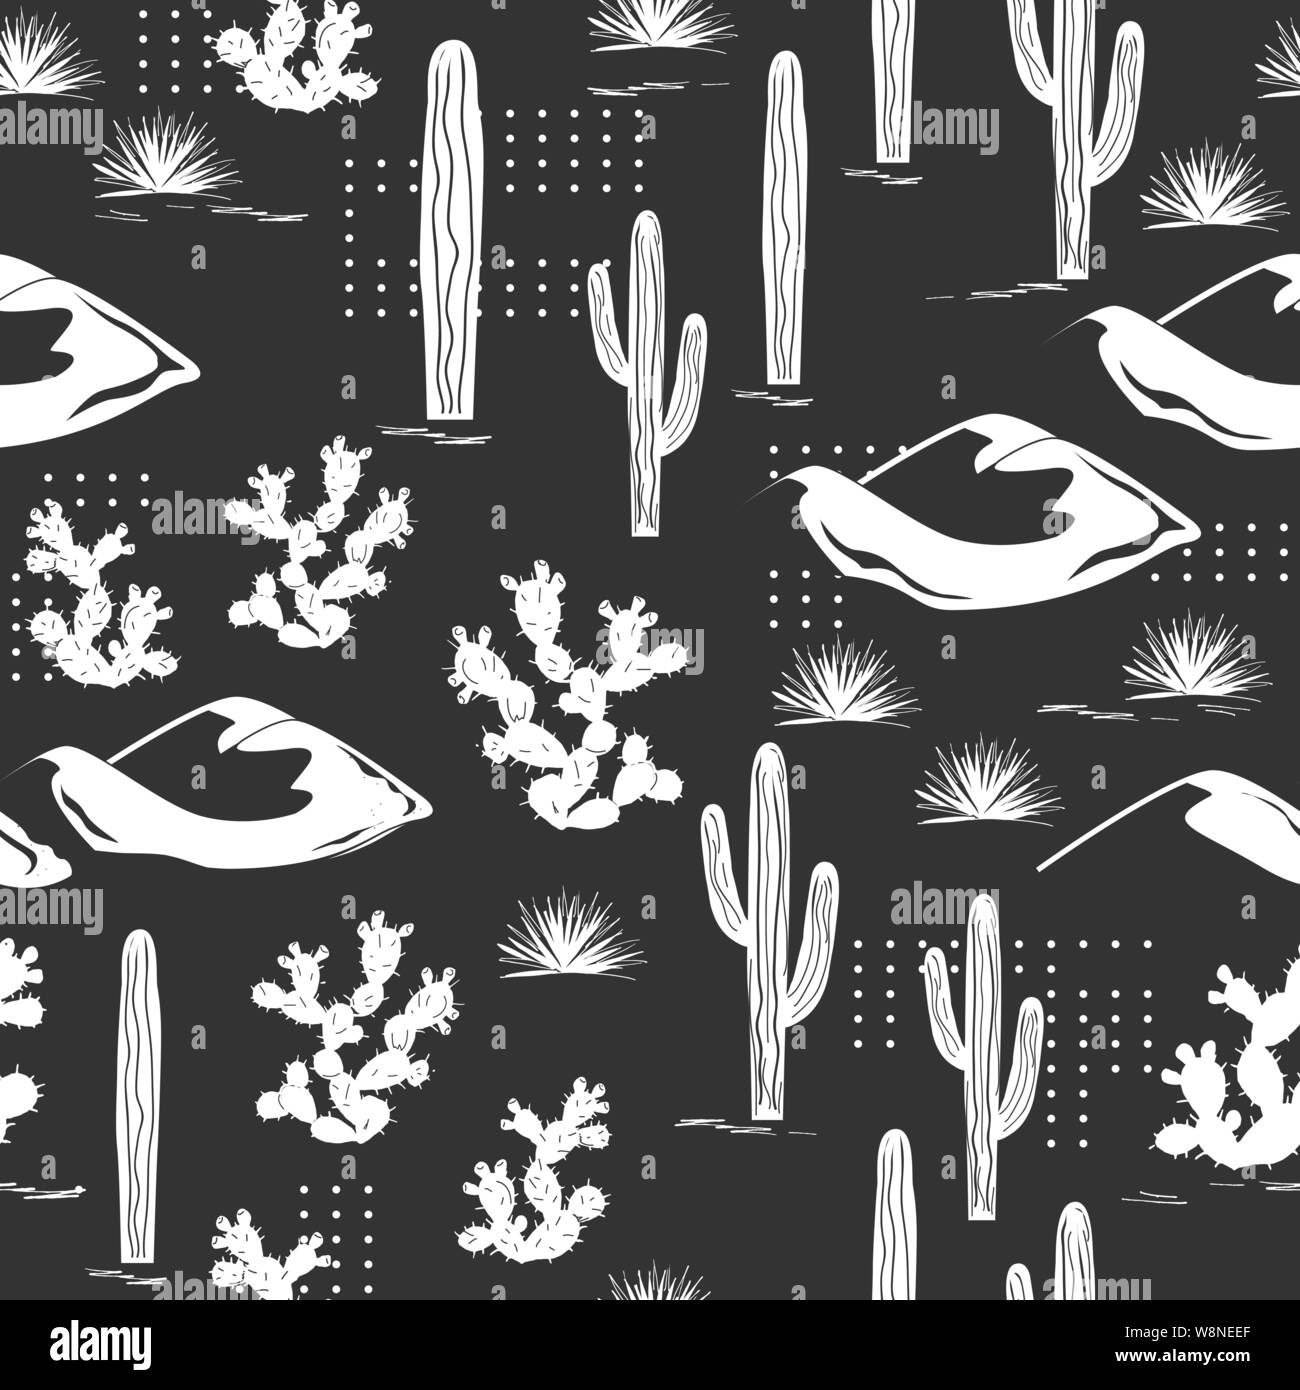 Vektorgrafik nahtlose Muster mit Dünen der Wüste, Saguaro Kakteen, Feigenkaktus, und Punkten. Stilvolle Abenteuer Hintergrund für Teens, Karten, Textil oder Stock Vektor